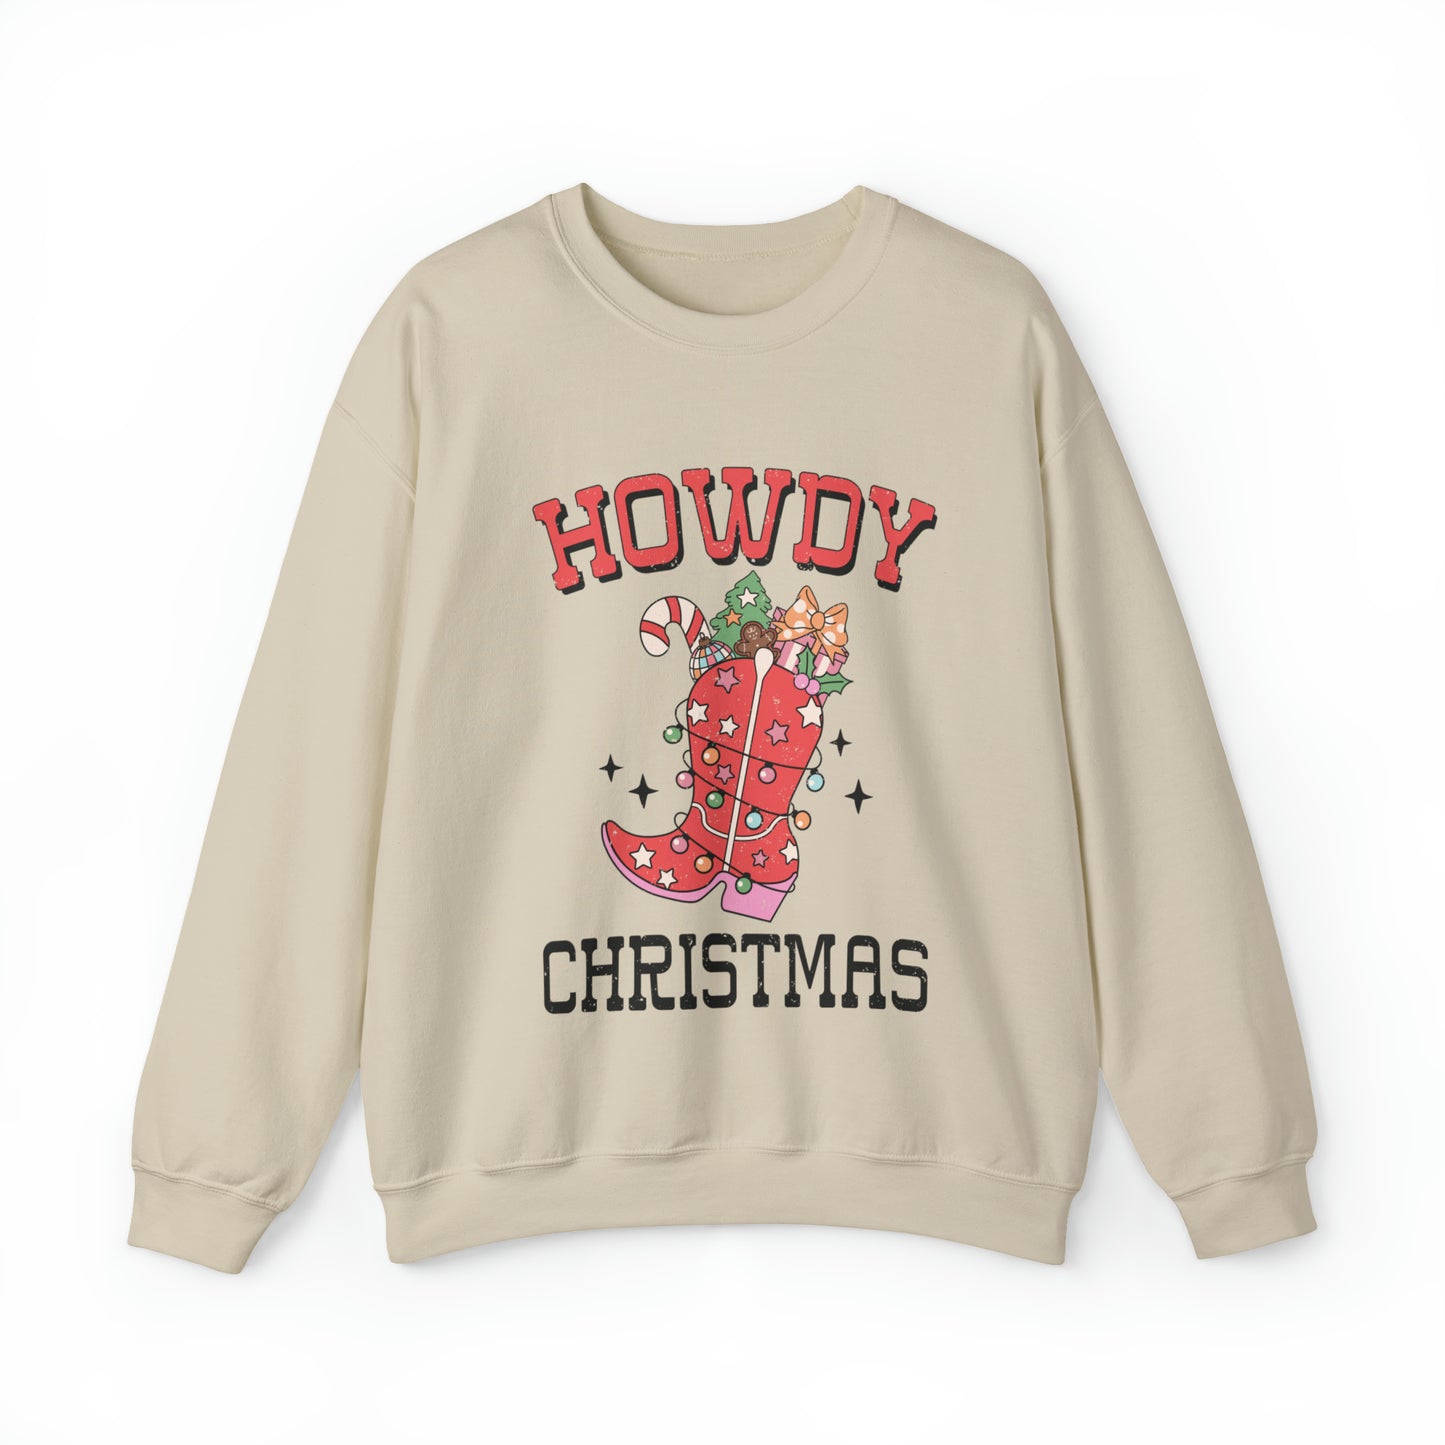 Howdy Christmas Women's Crewneck Sweatshirt